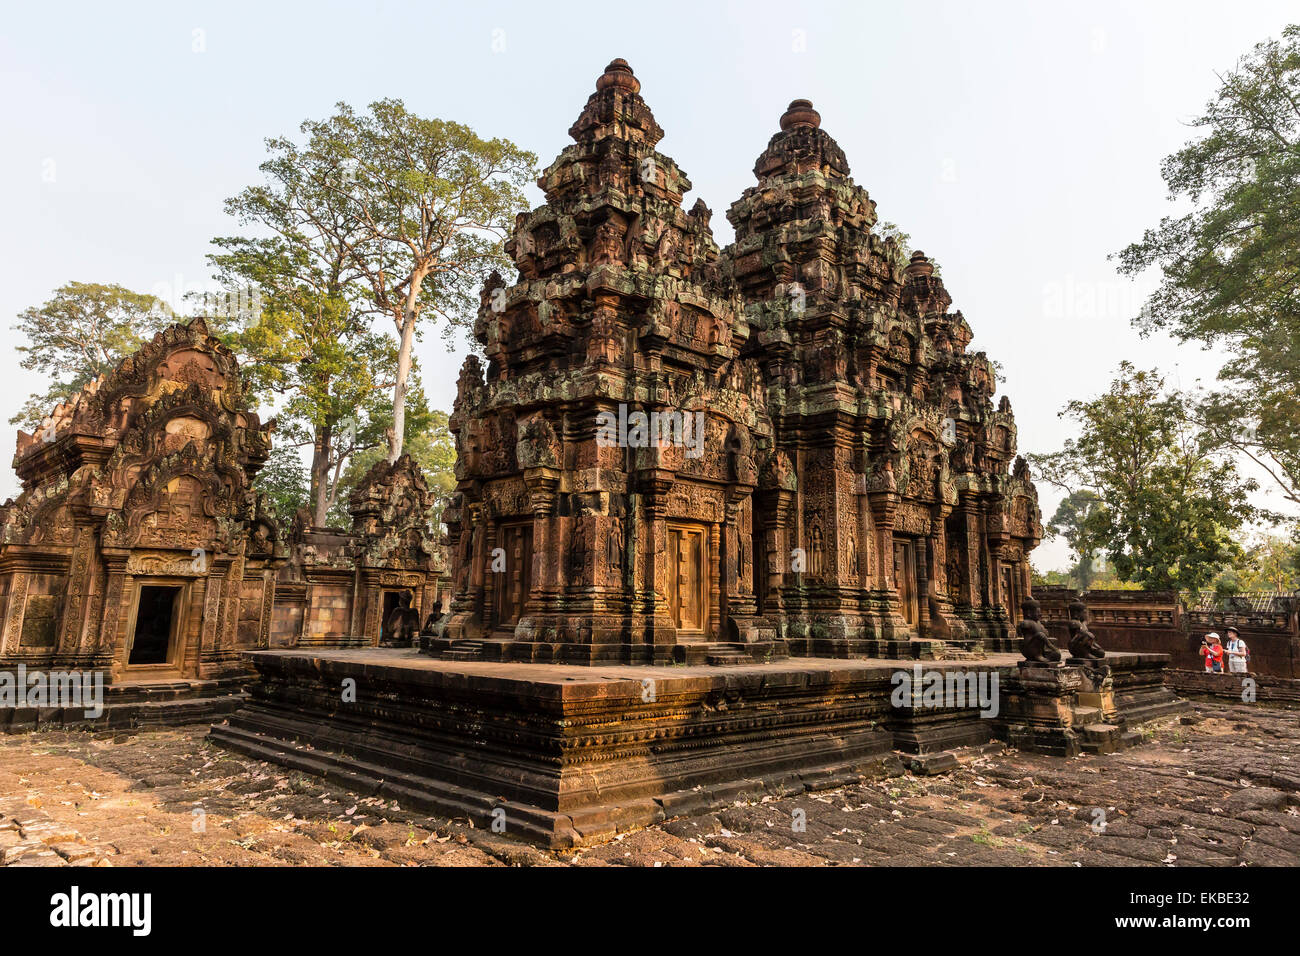 Sculture ornate in pietra arenaria rossa in corrispondenza di Banteay Srei tempio di Angkor, UNESCO, Siem Reap, Cambogia, Indocina, Asia sud-orientale, Asia Foto Stock